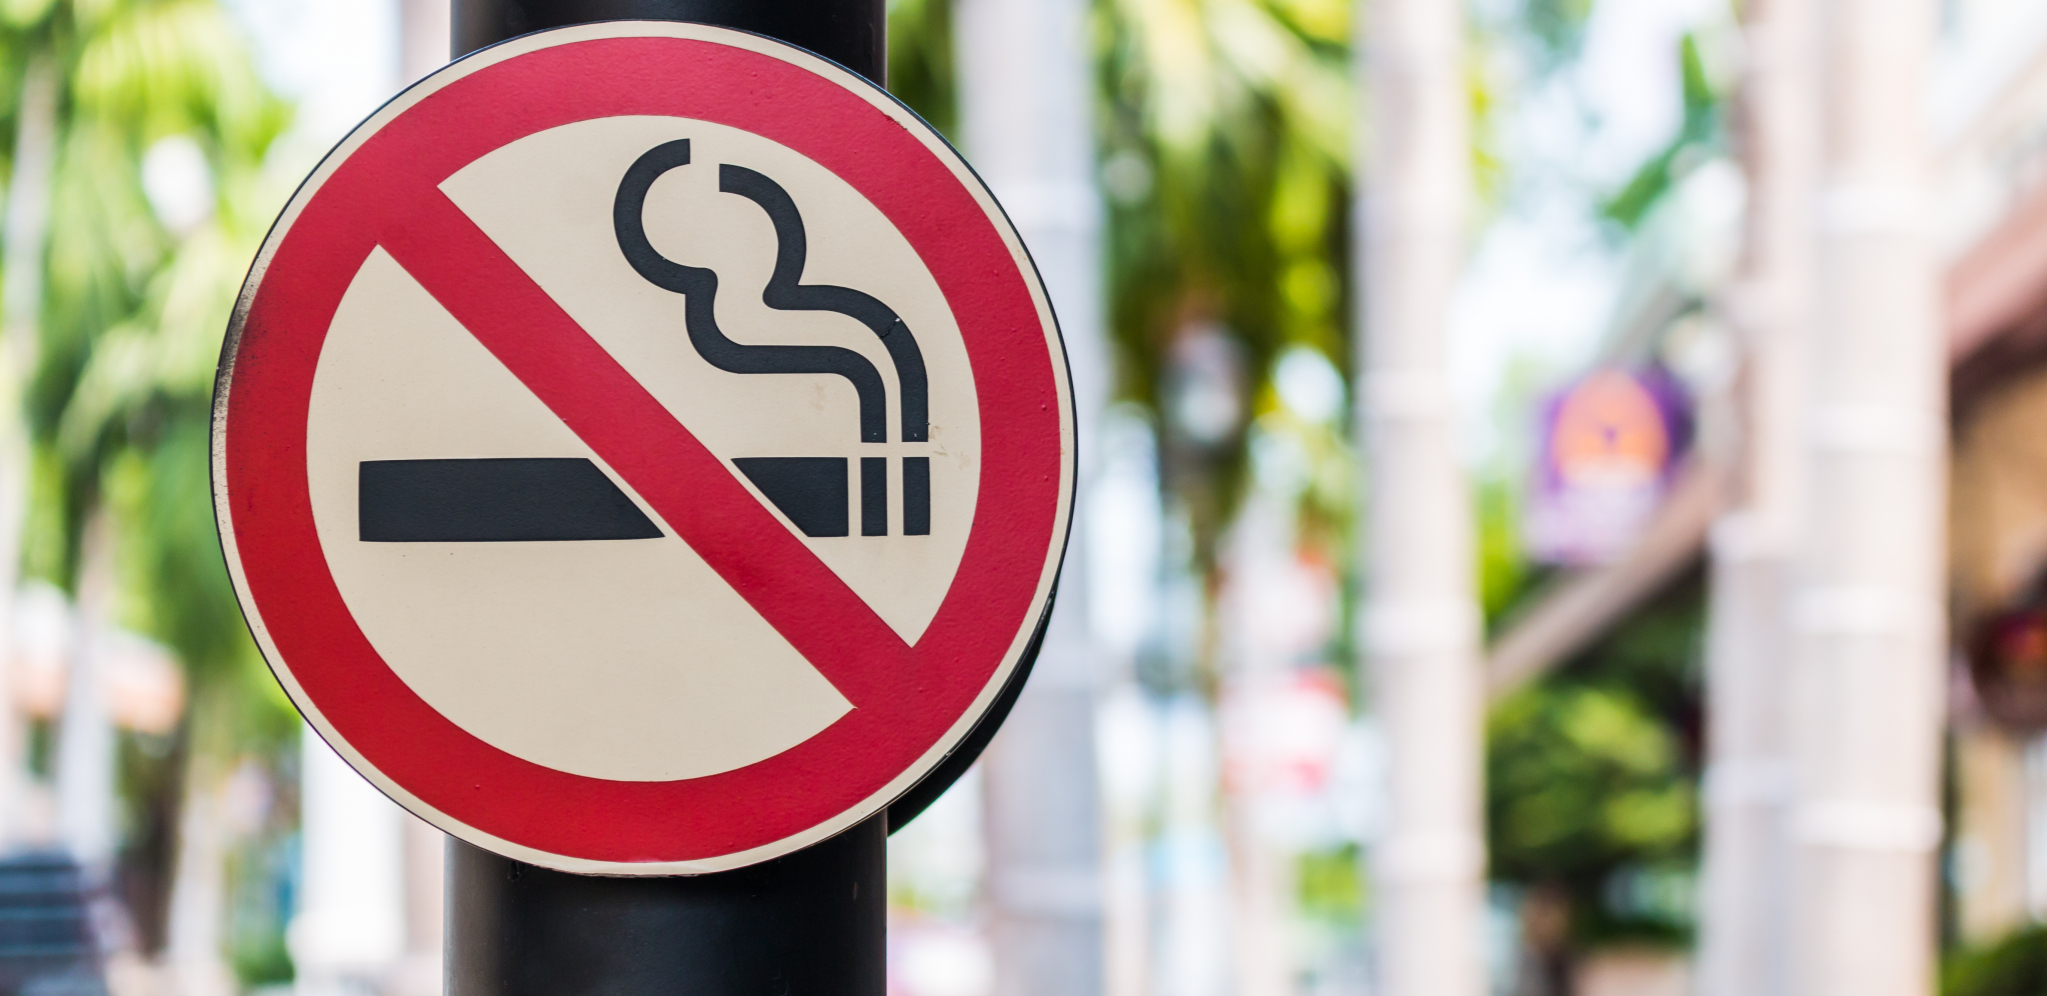 SUTRA JE DAN BEZ DUVANSKOG DIMA U Srbiji godišnje zbog pušenja prevremeno premine 15.000 ljudi!